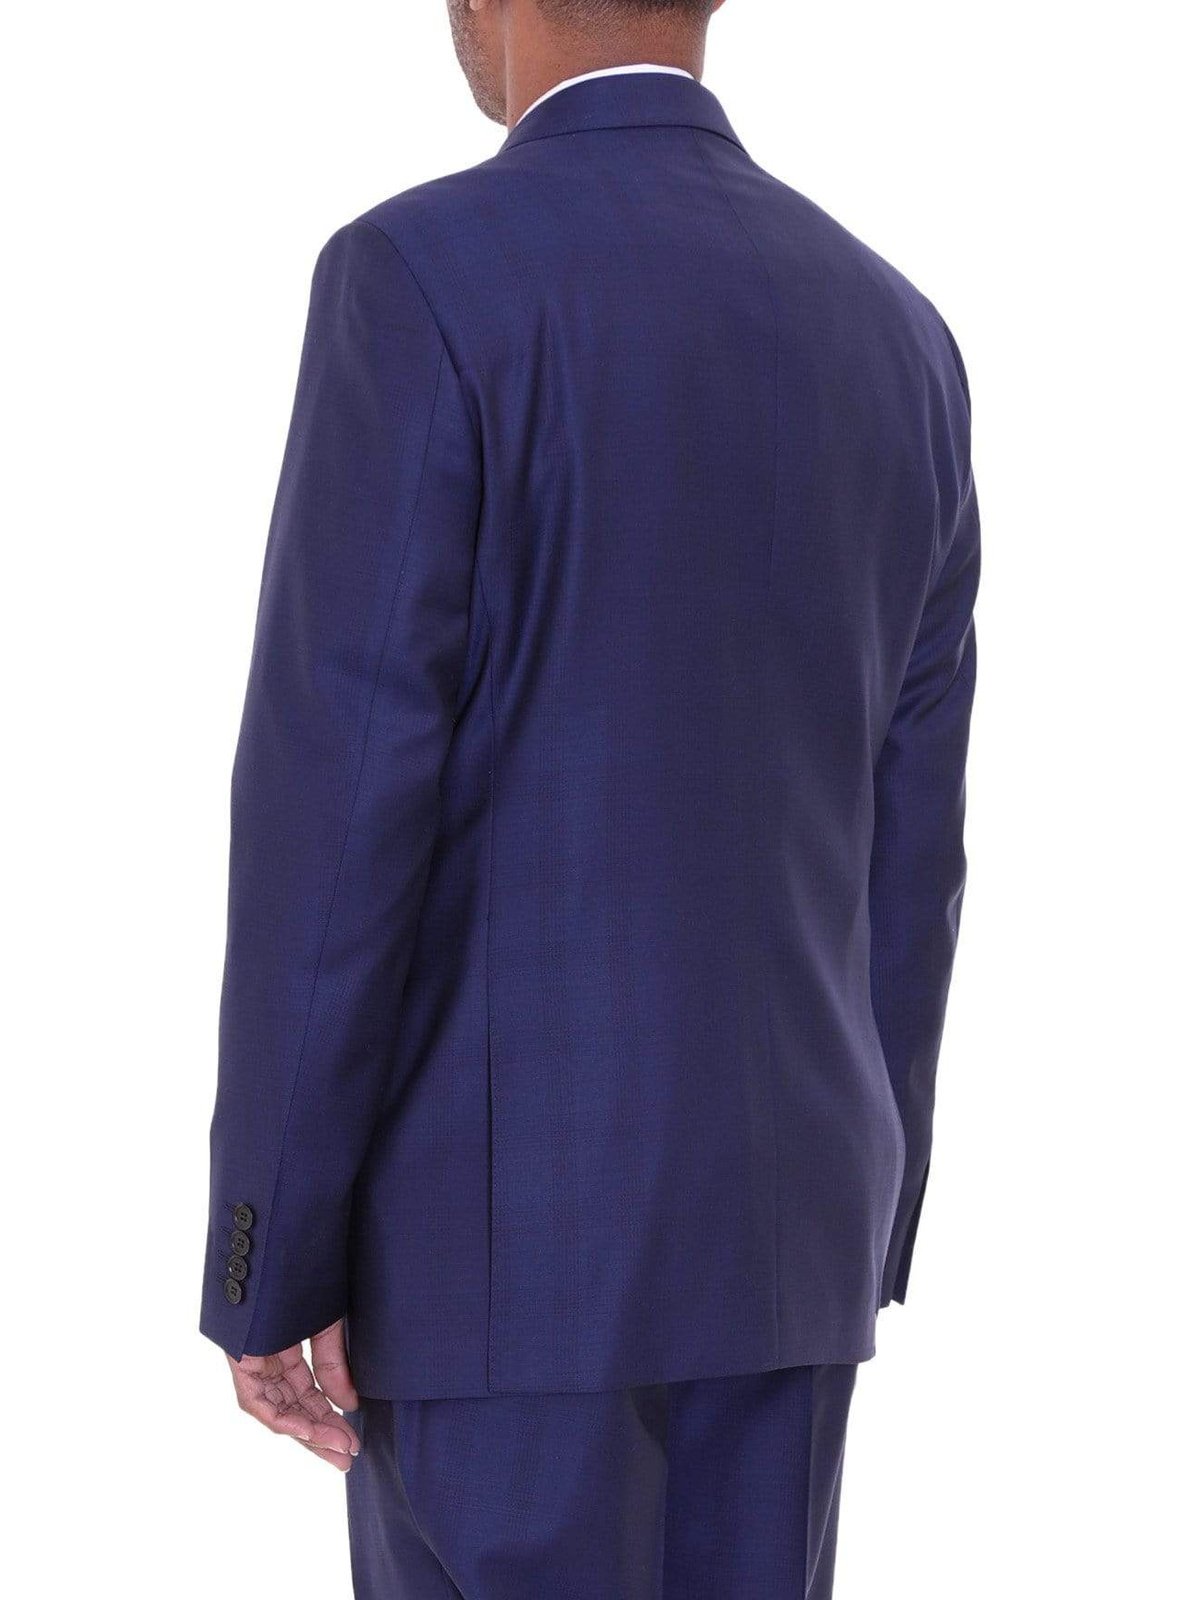 Label E TWO PIECE SUITS Mens Modern Fit Blue Glen Plaid Two Button Wool Suit